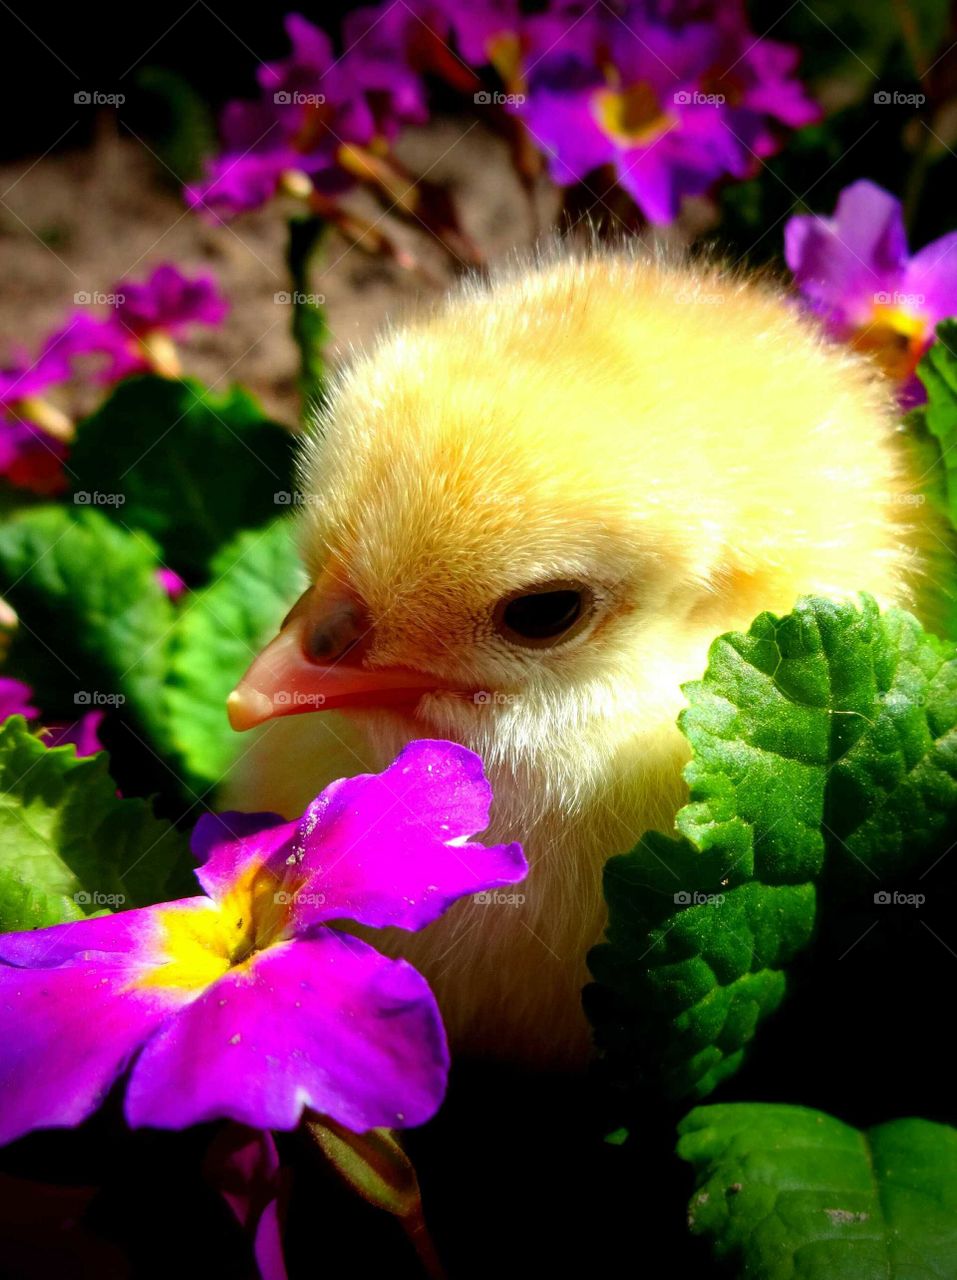 spring chick